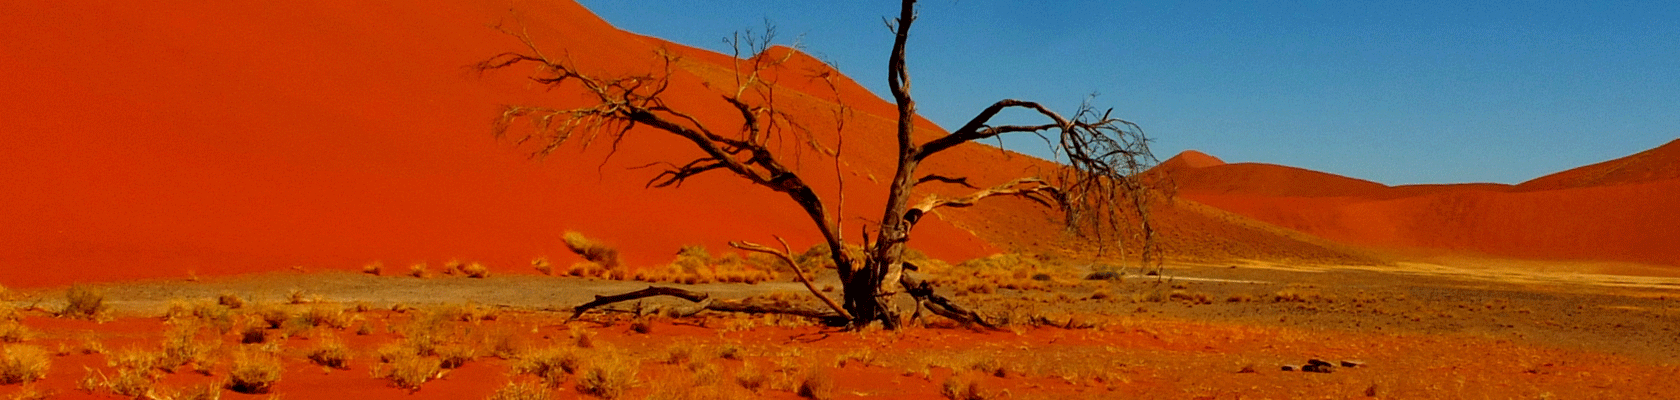 Rondreis Namibië